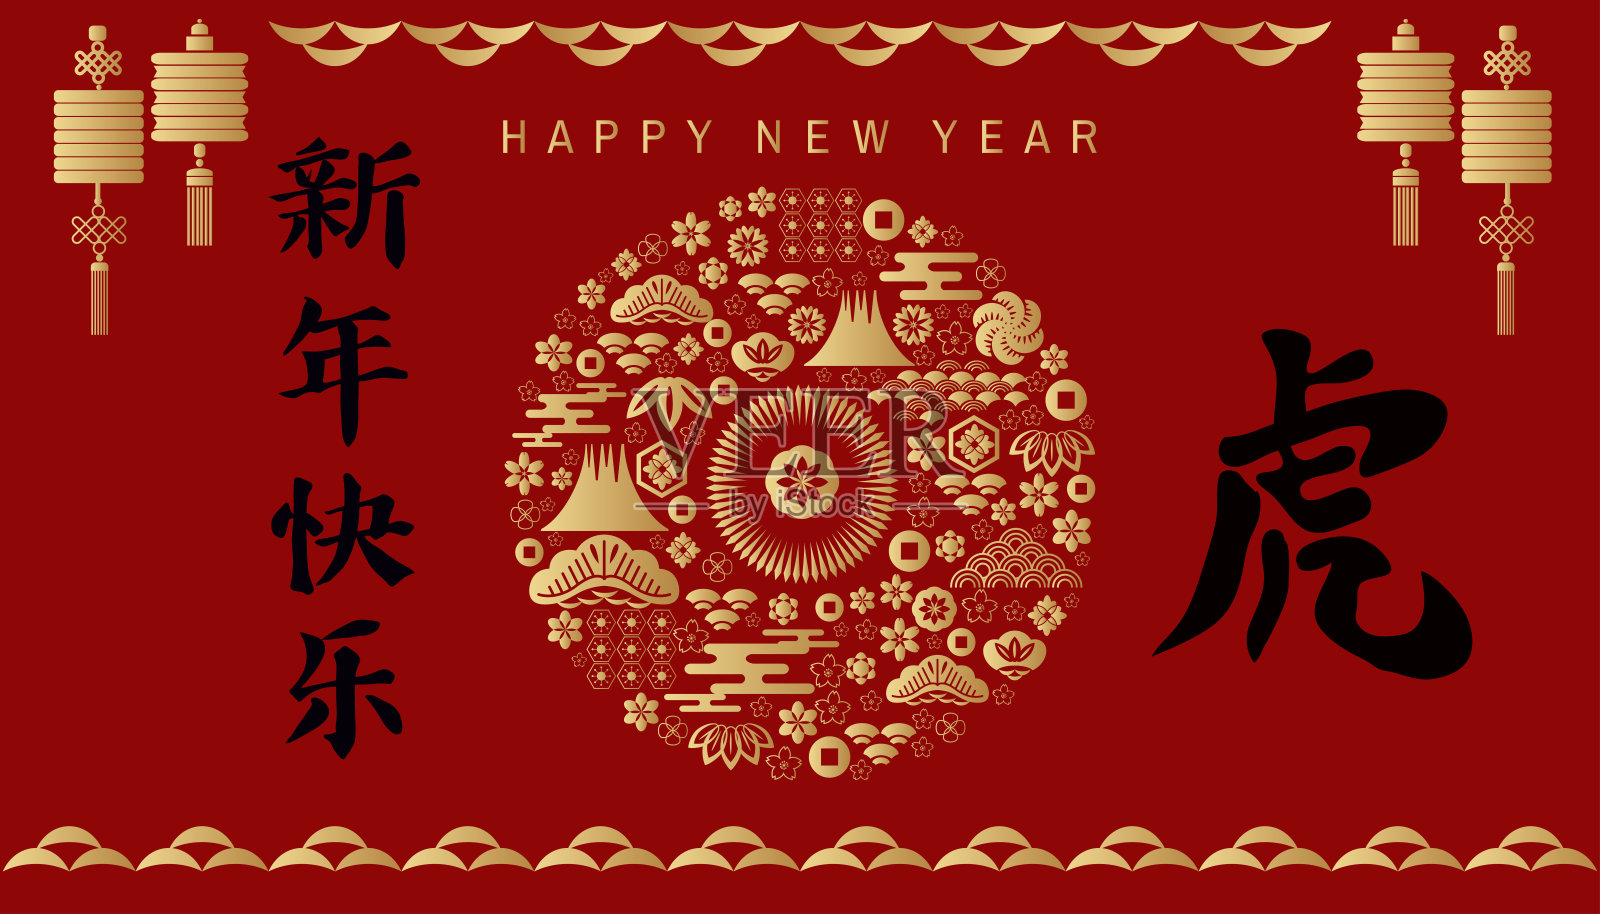 祝中国新的2022年虎年快乐。设计模板素材